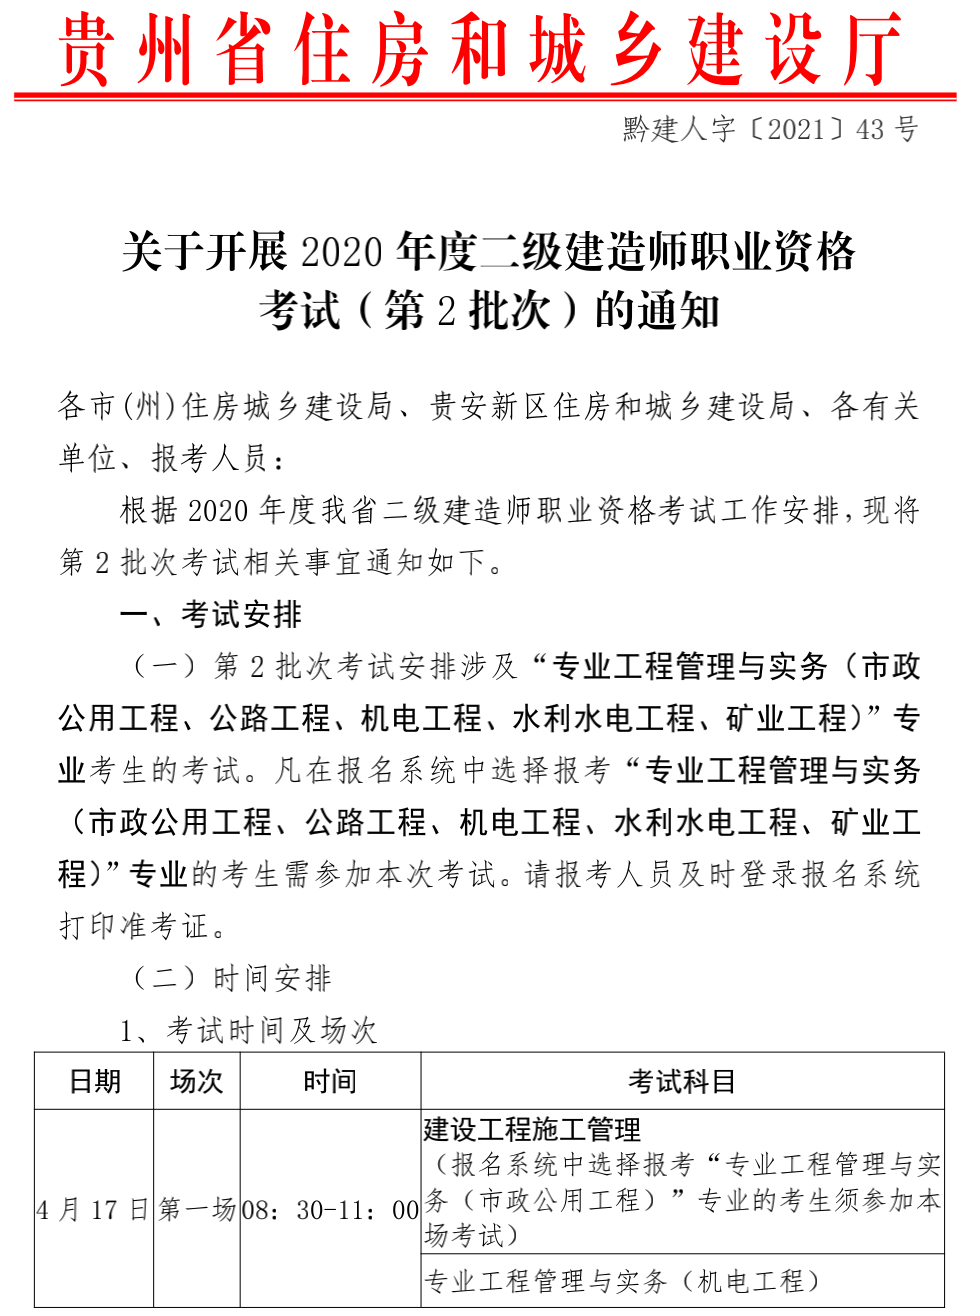 贵州发布2020年度二级建造师考试(第2批次)的通知.png